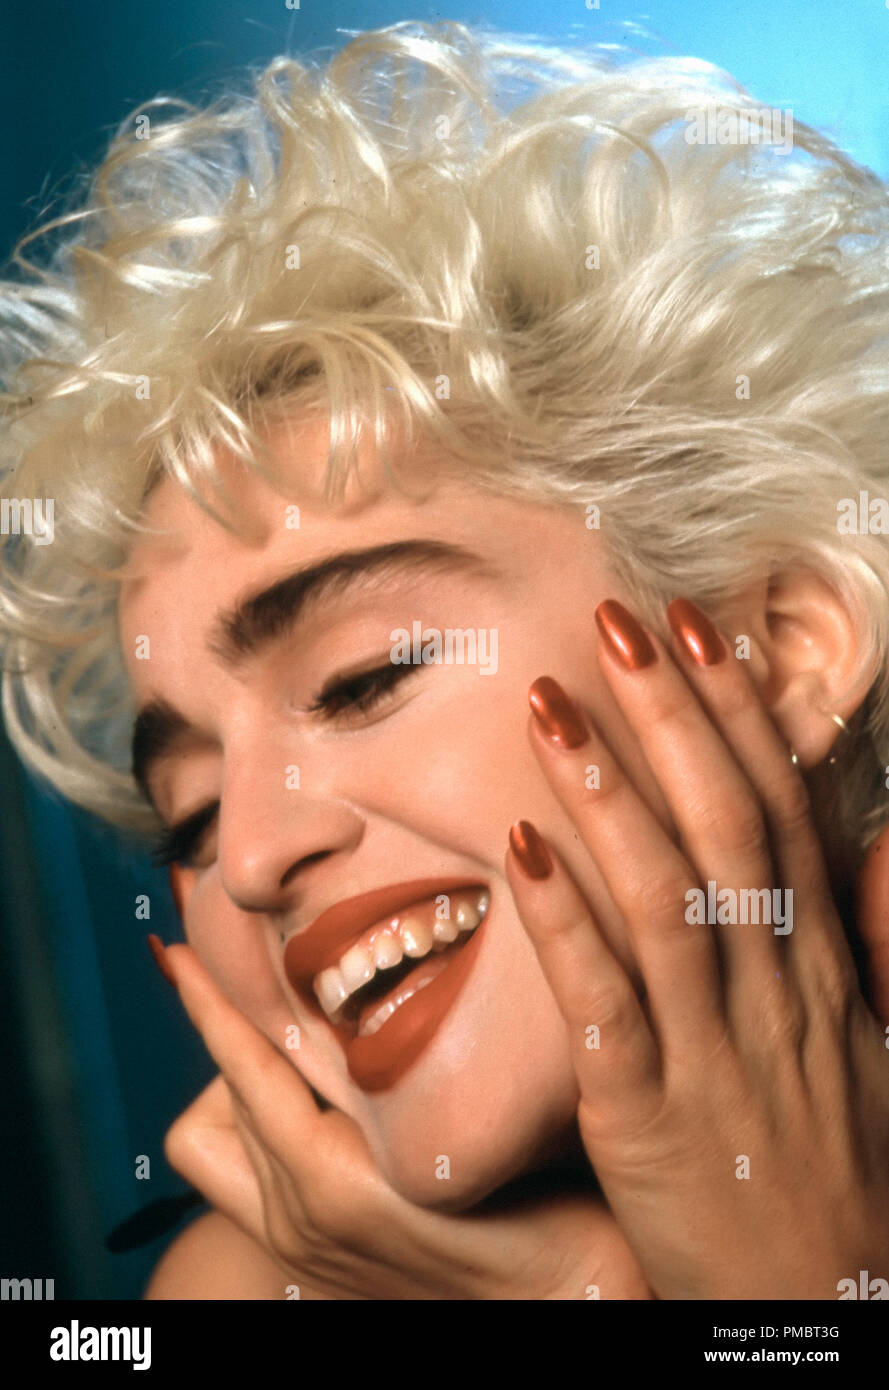 Publicité studio toujours de 'Qui est cette fille' Madonna Warner © 1987 Tous droits réservés n° de référence de fichier 32914 243THA pour un usage éditorial uniquement Banque D'Images